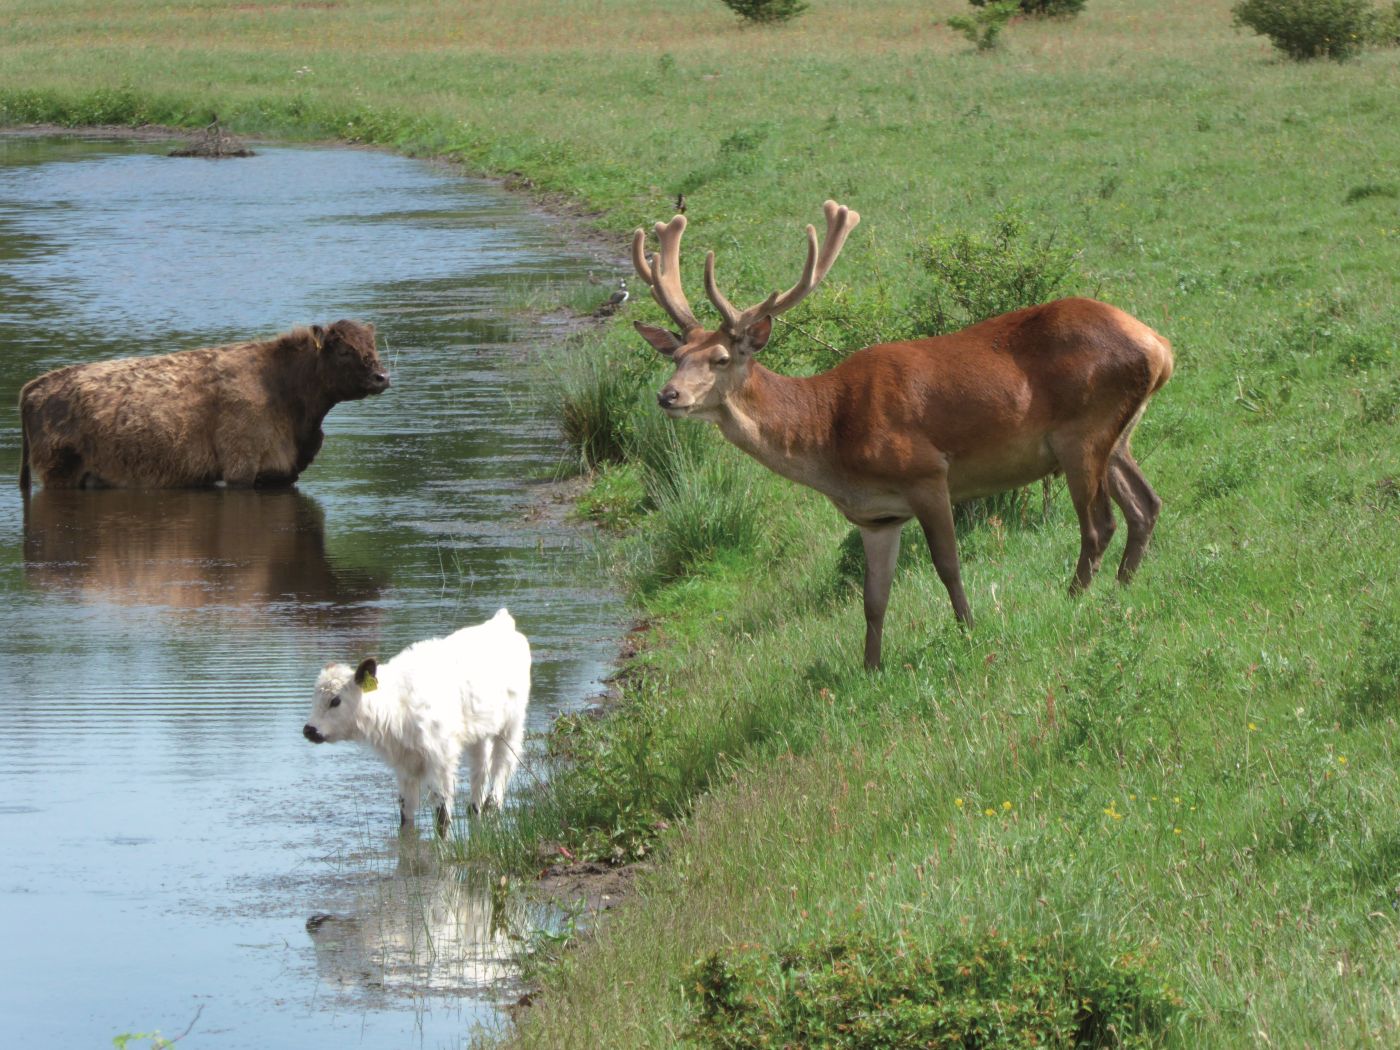 Rinder und Hirsch am Wasser.